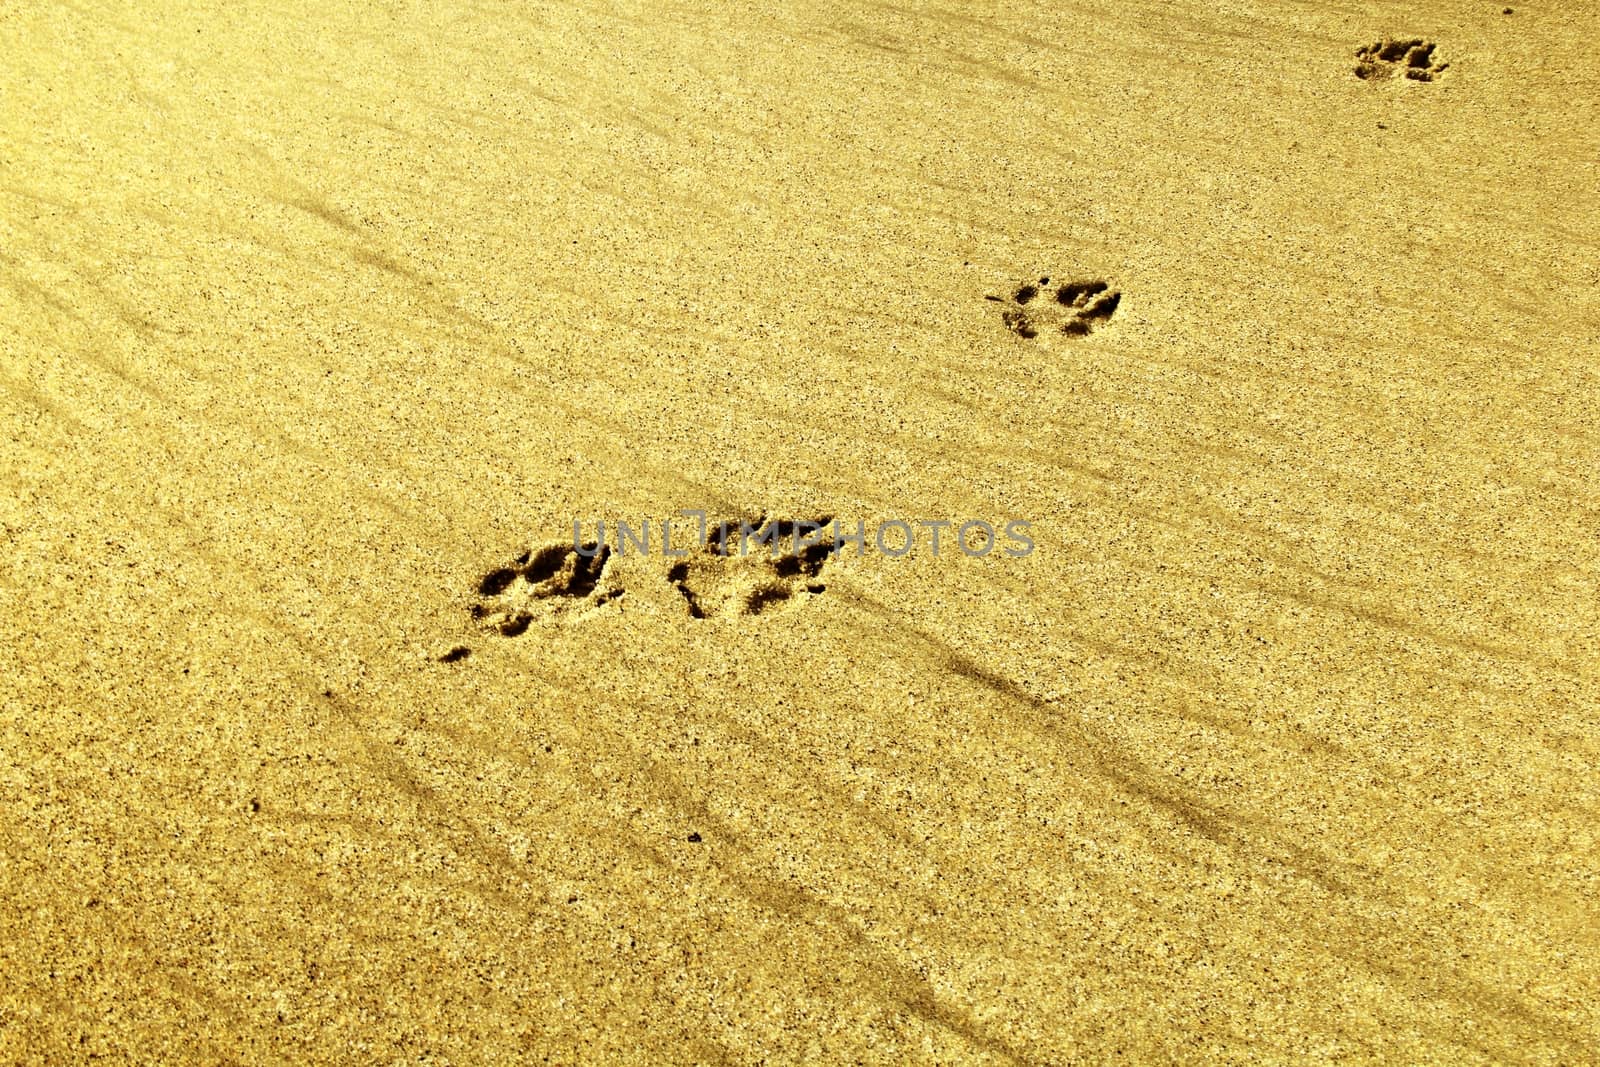 Dog footprint on the sand